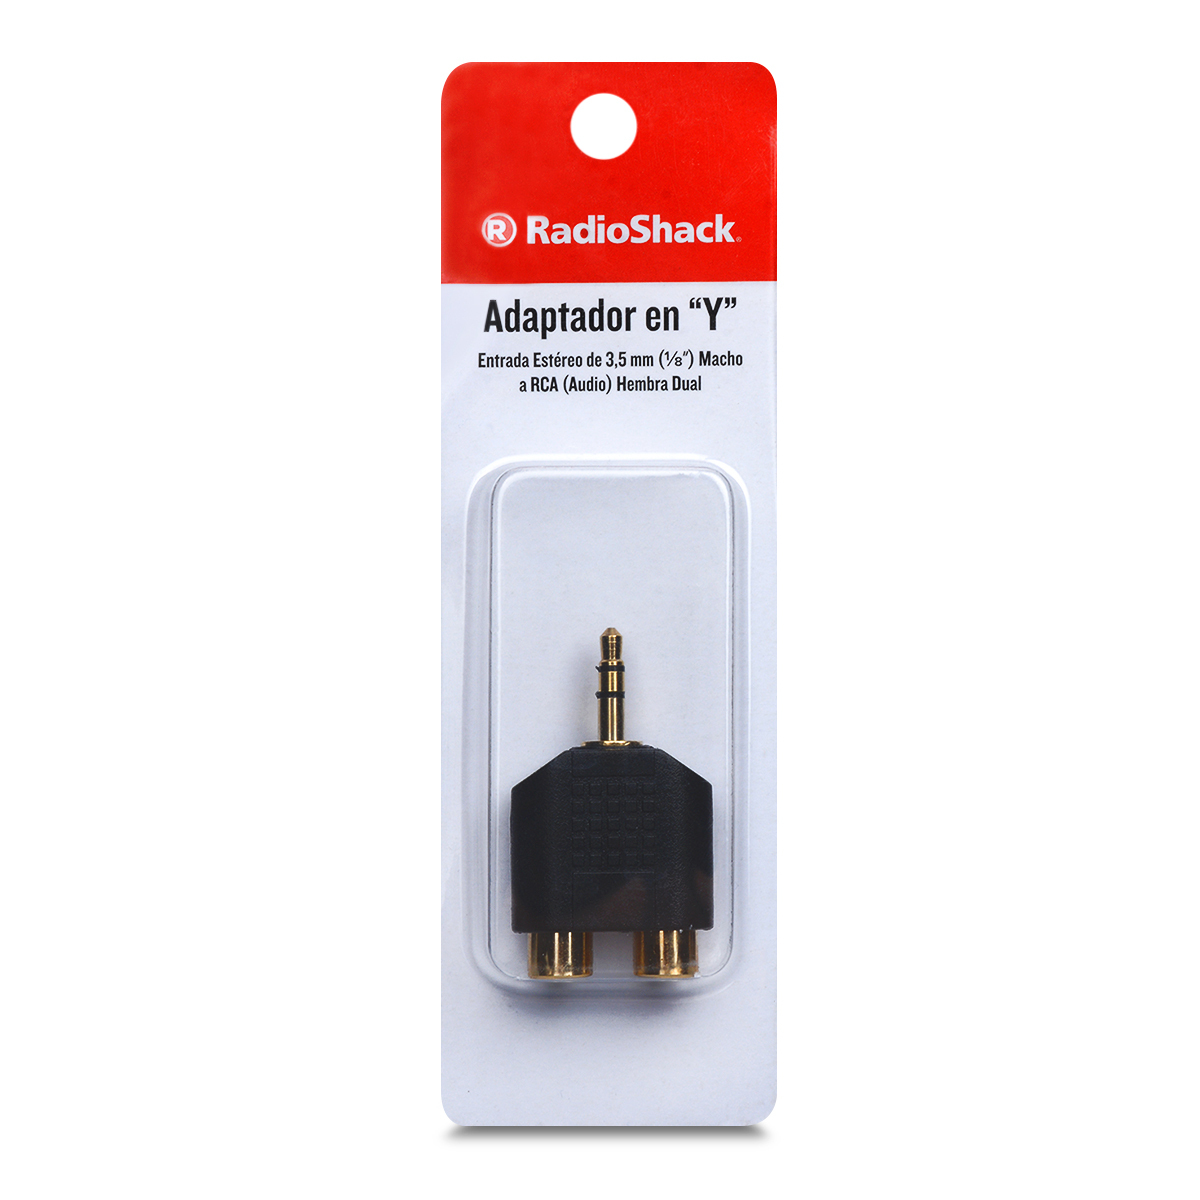 Adaptador de Audio Estéreo 6.3 mm a Auxiliar 3.5 mm RadioShack / Negro, Accesorios y Cables, Cables y Accesorios Celular y Automovil, Originales  RadioShack, Todas, Categoría